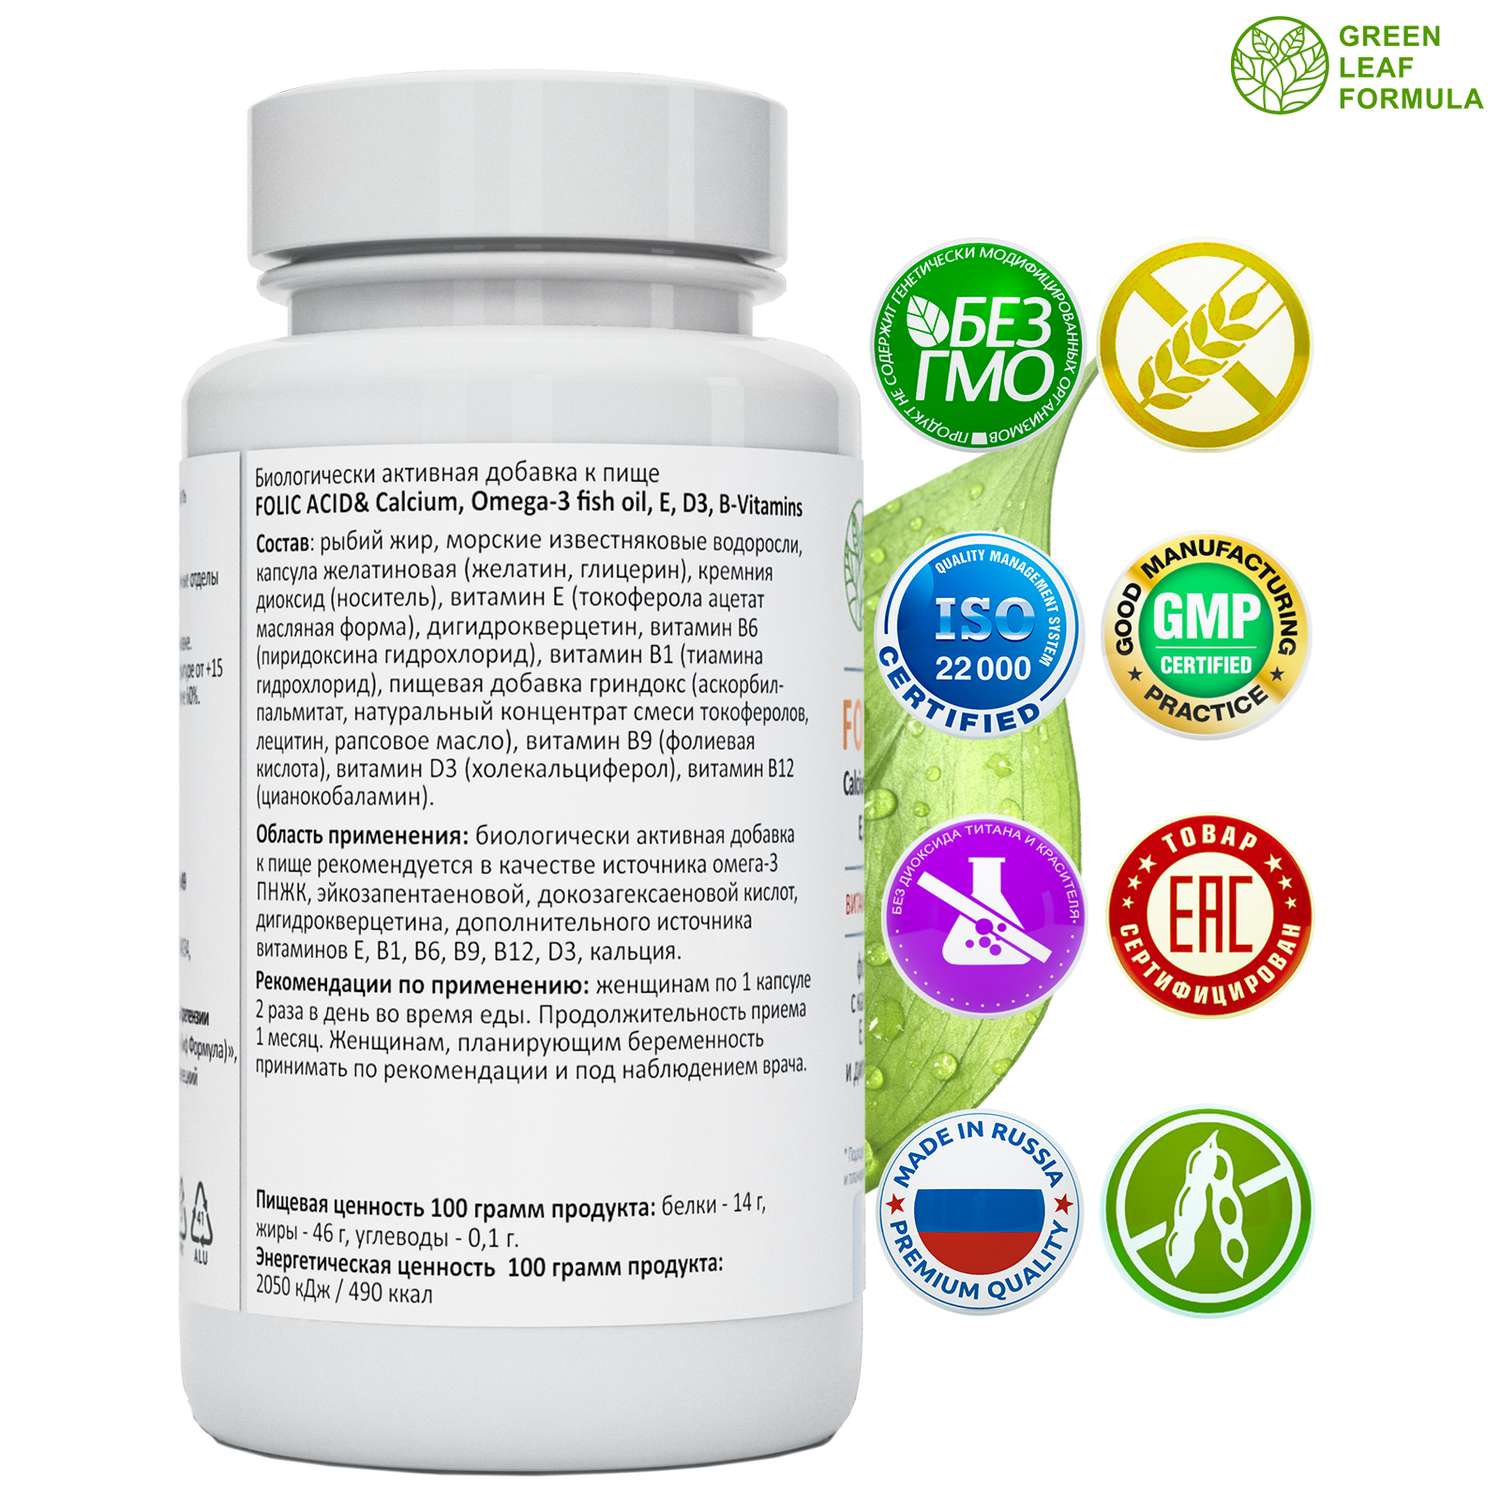 Фолиевая кислота и кальций Д3 Green Leaf Formula витаминный комплекс для беременных и кормящих женщин 60 капсул - фото 2